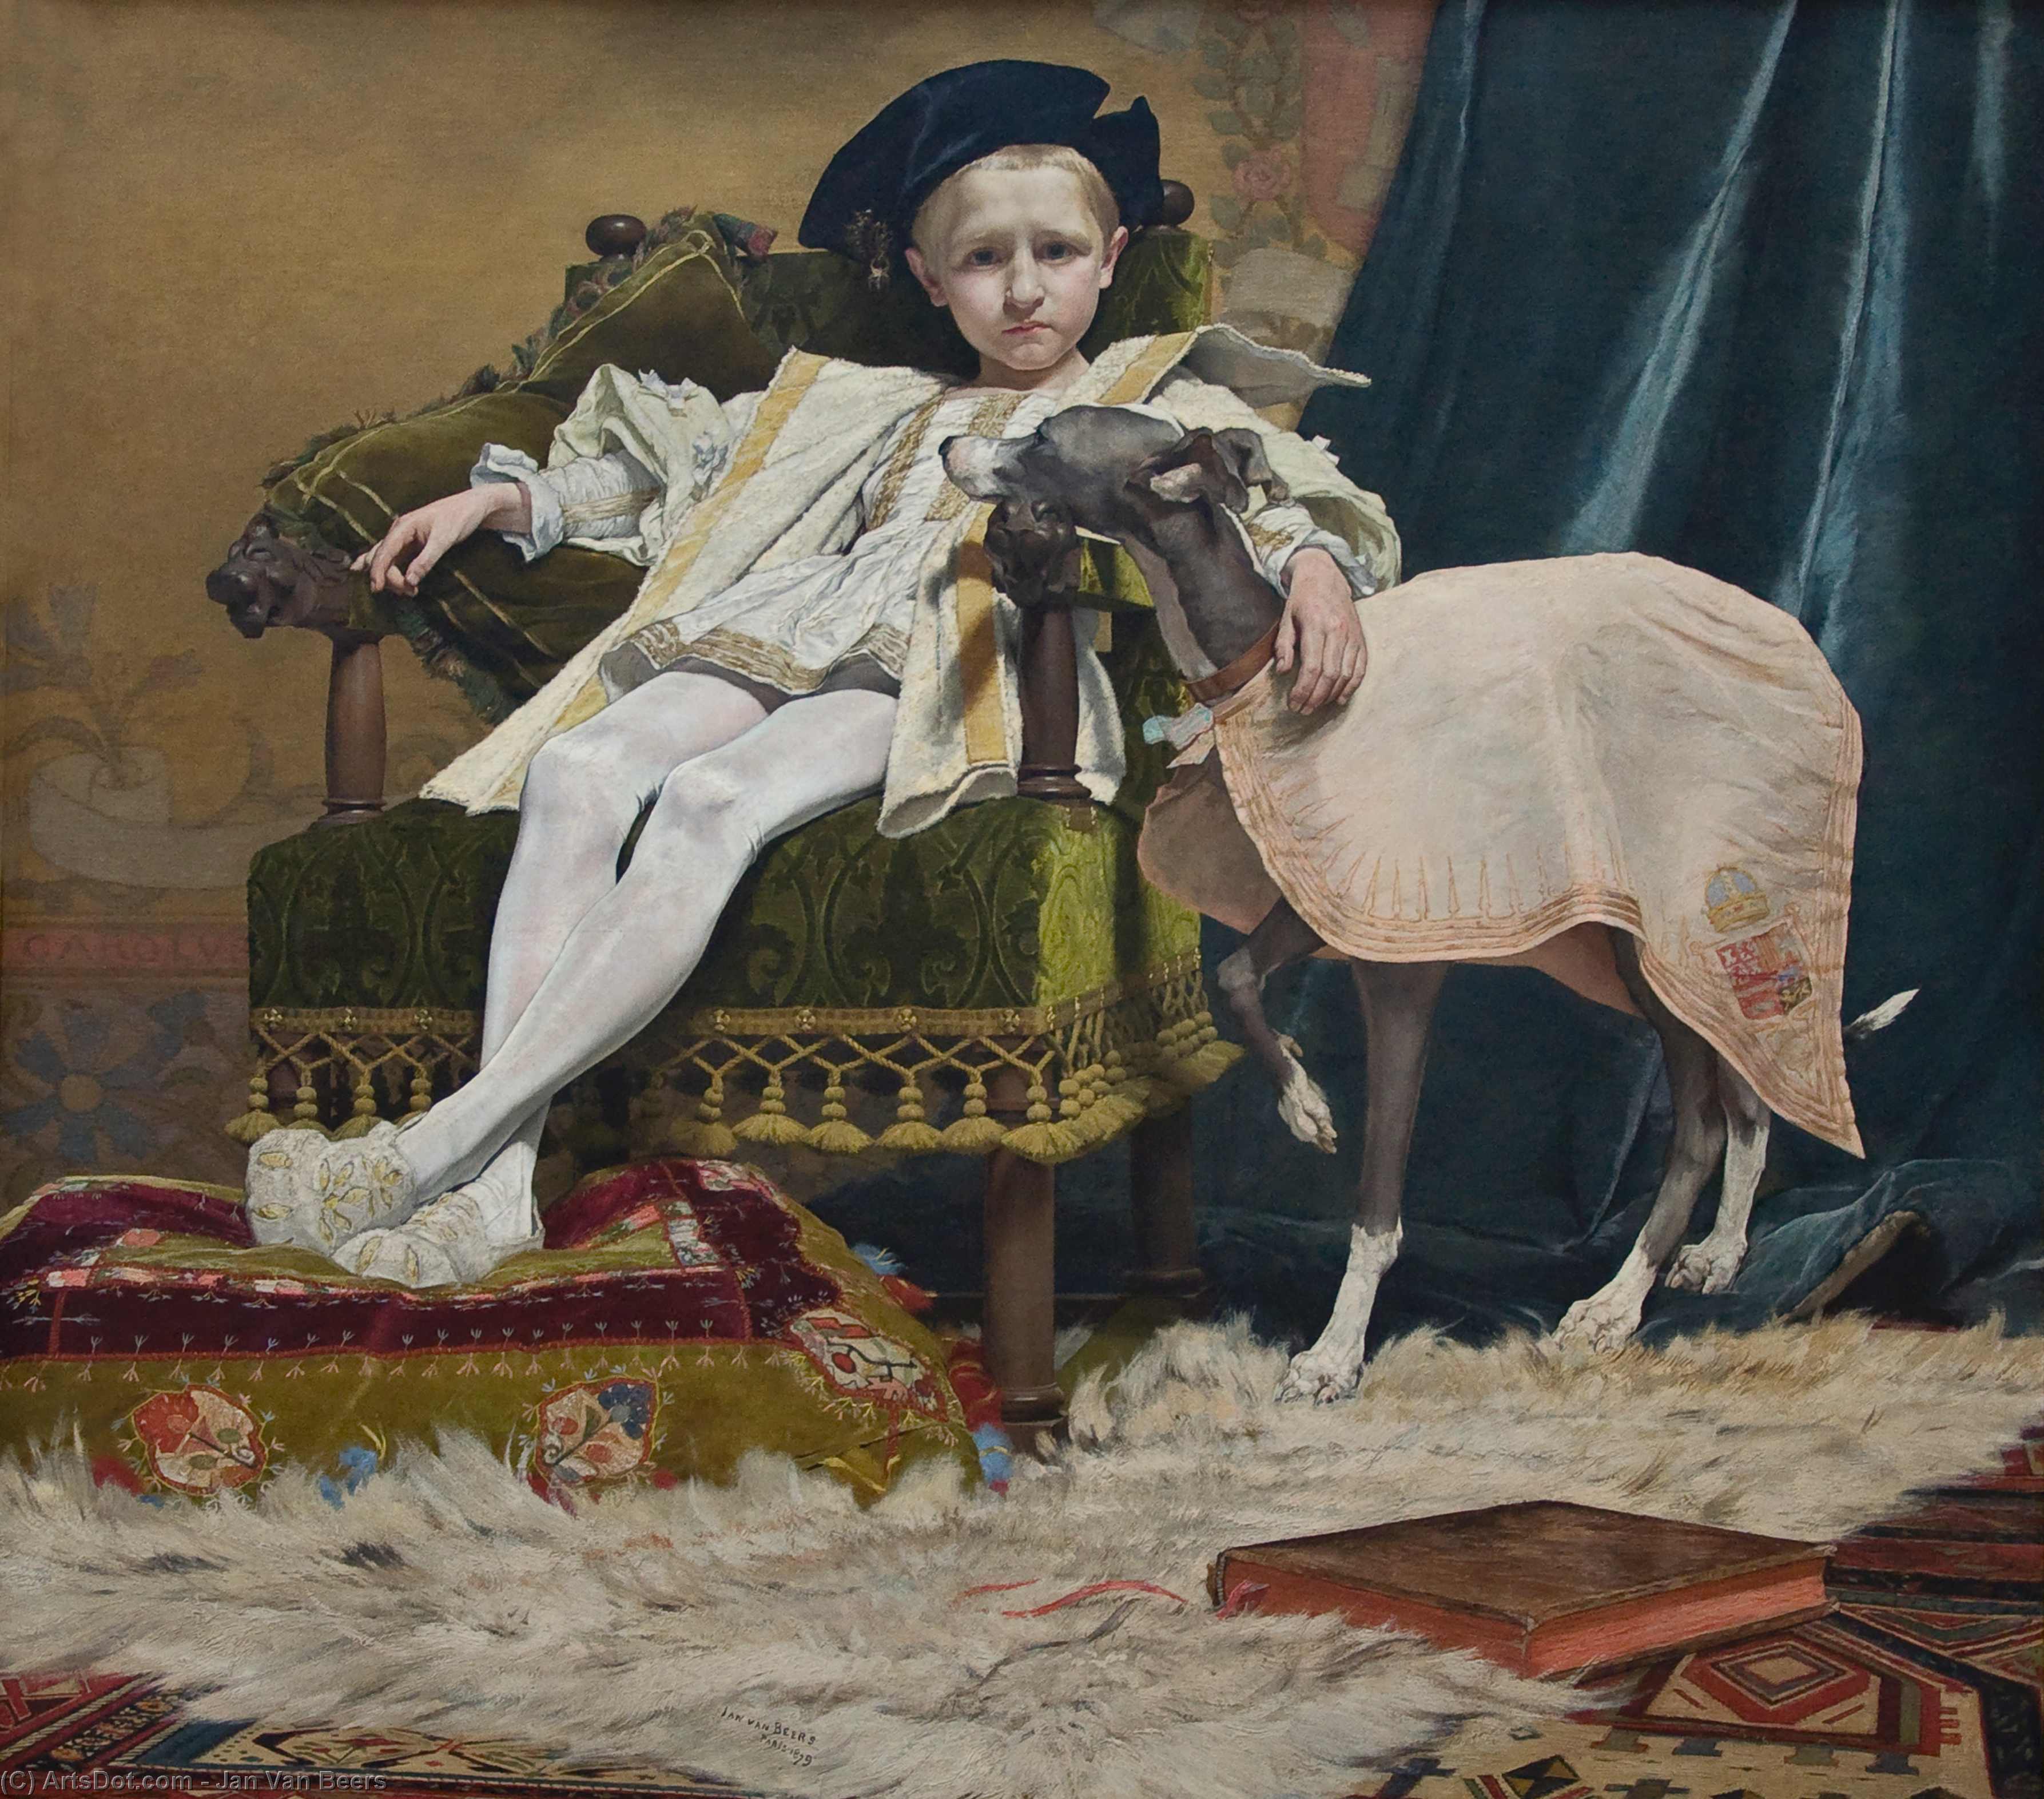 WikiOO.org - Encyclopedia of Fine Arts - Målning, konstverk Jan Van Beers - The Emperor Charles V as a Child